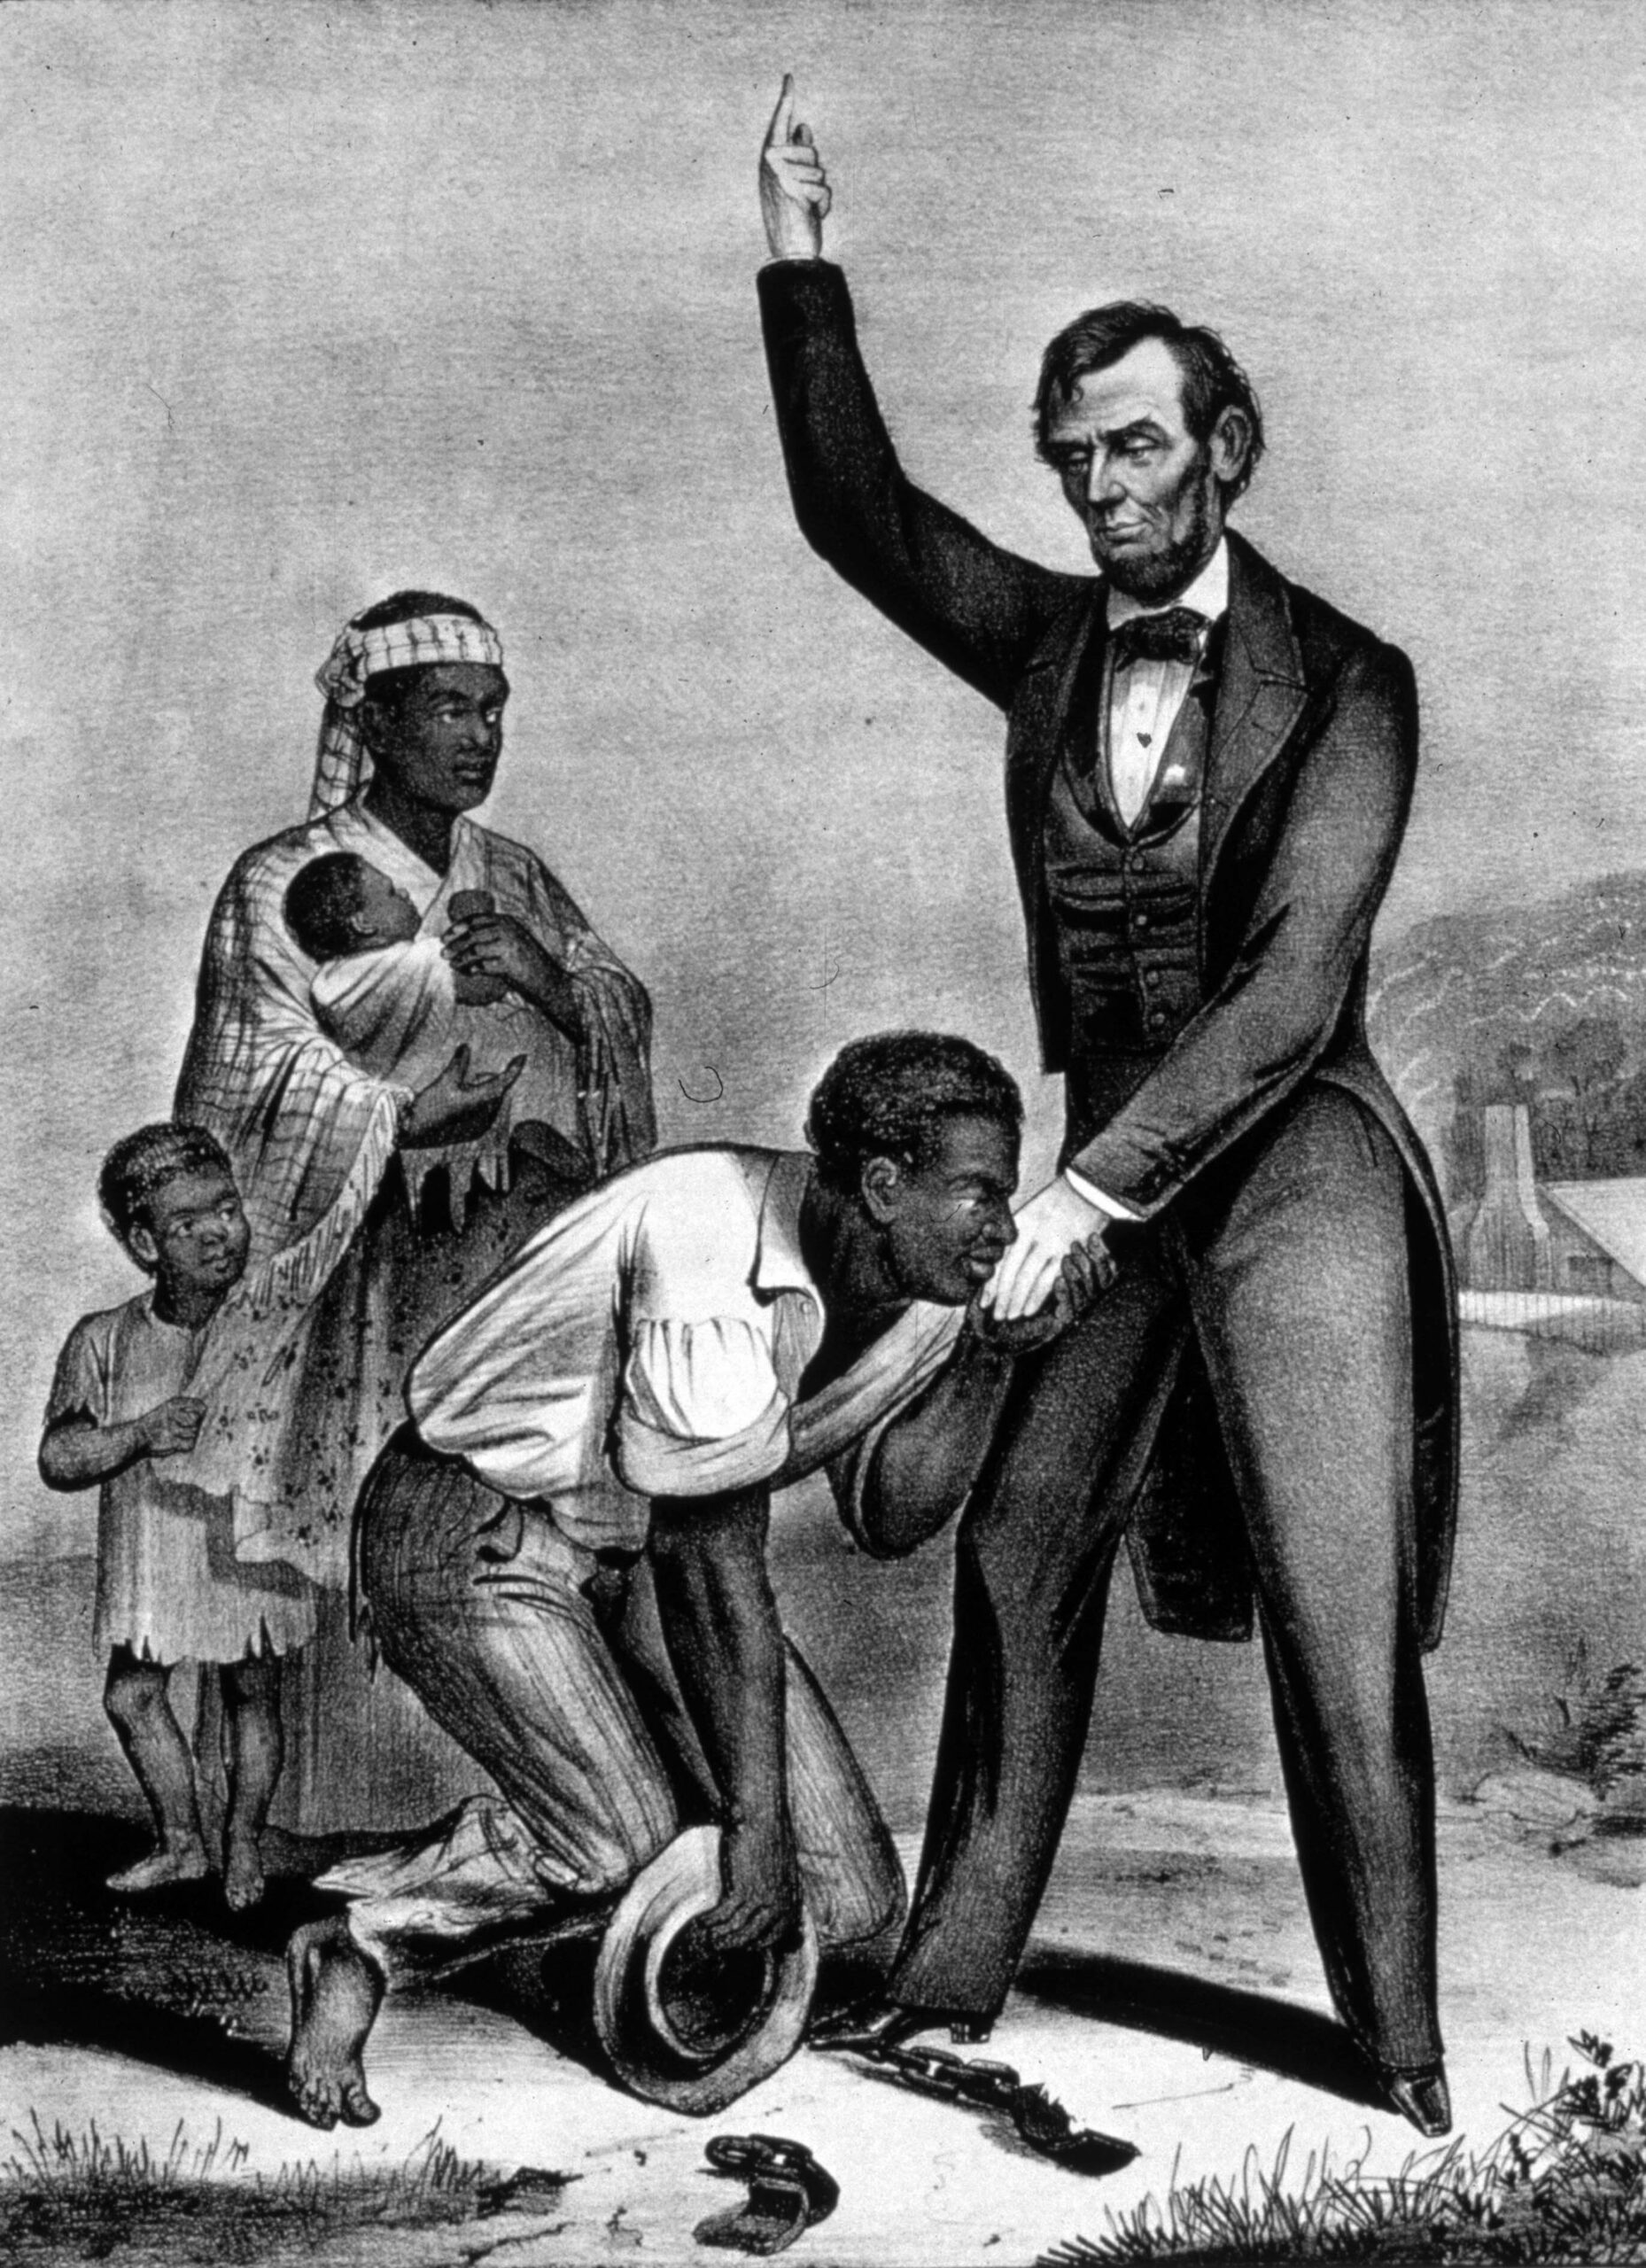 ประธานาธิบดีอับราฮัม ลินคอล์น ได้ลงนามประกาศเลิกทาส ซึ่งสร้างความไม่พอใจให้แก่คนผิวขาว